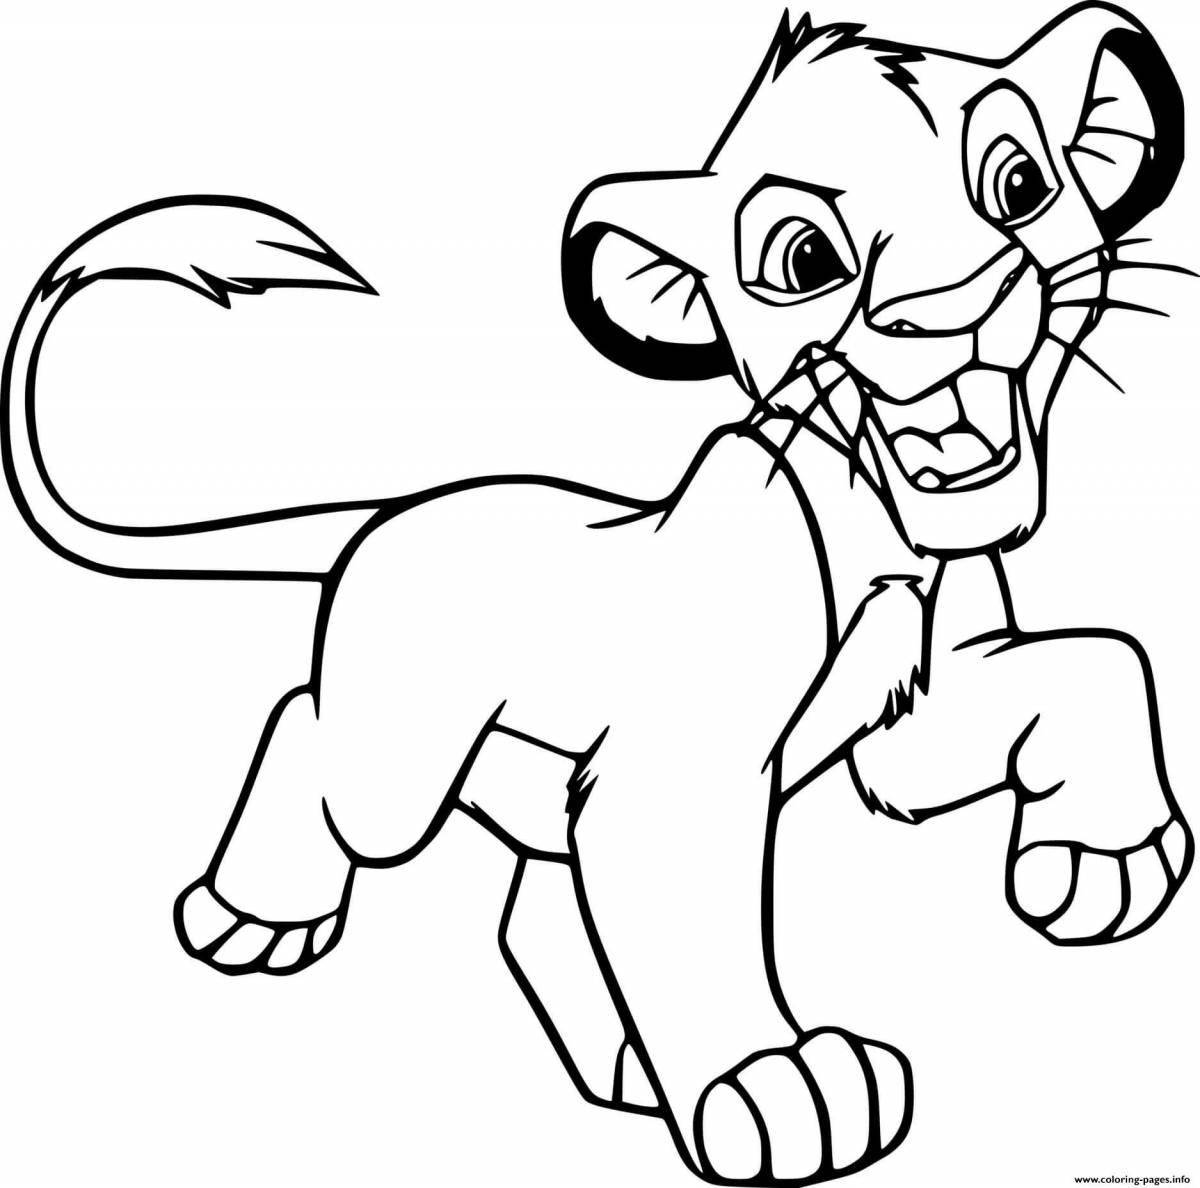 Игривая страница раскраски король лев для детей